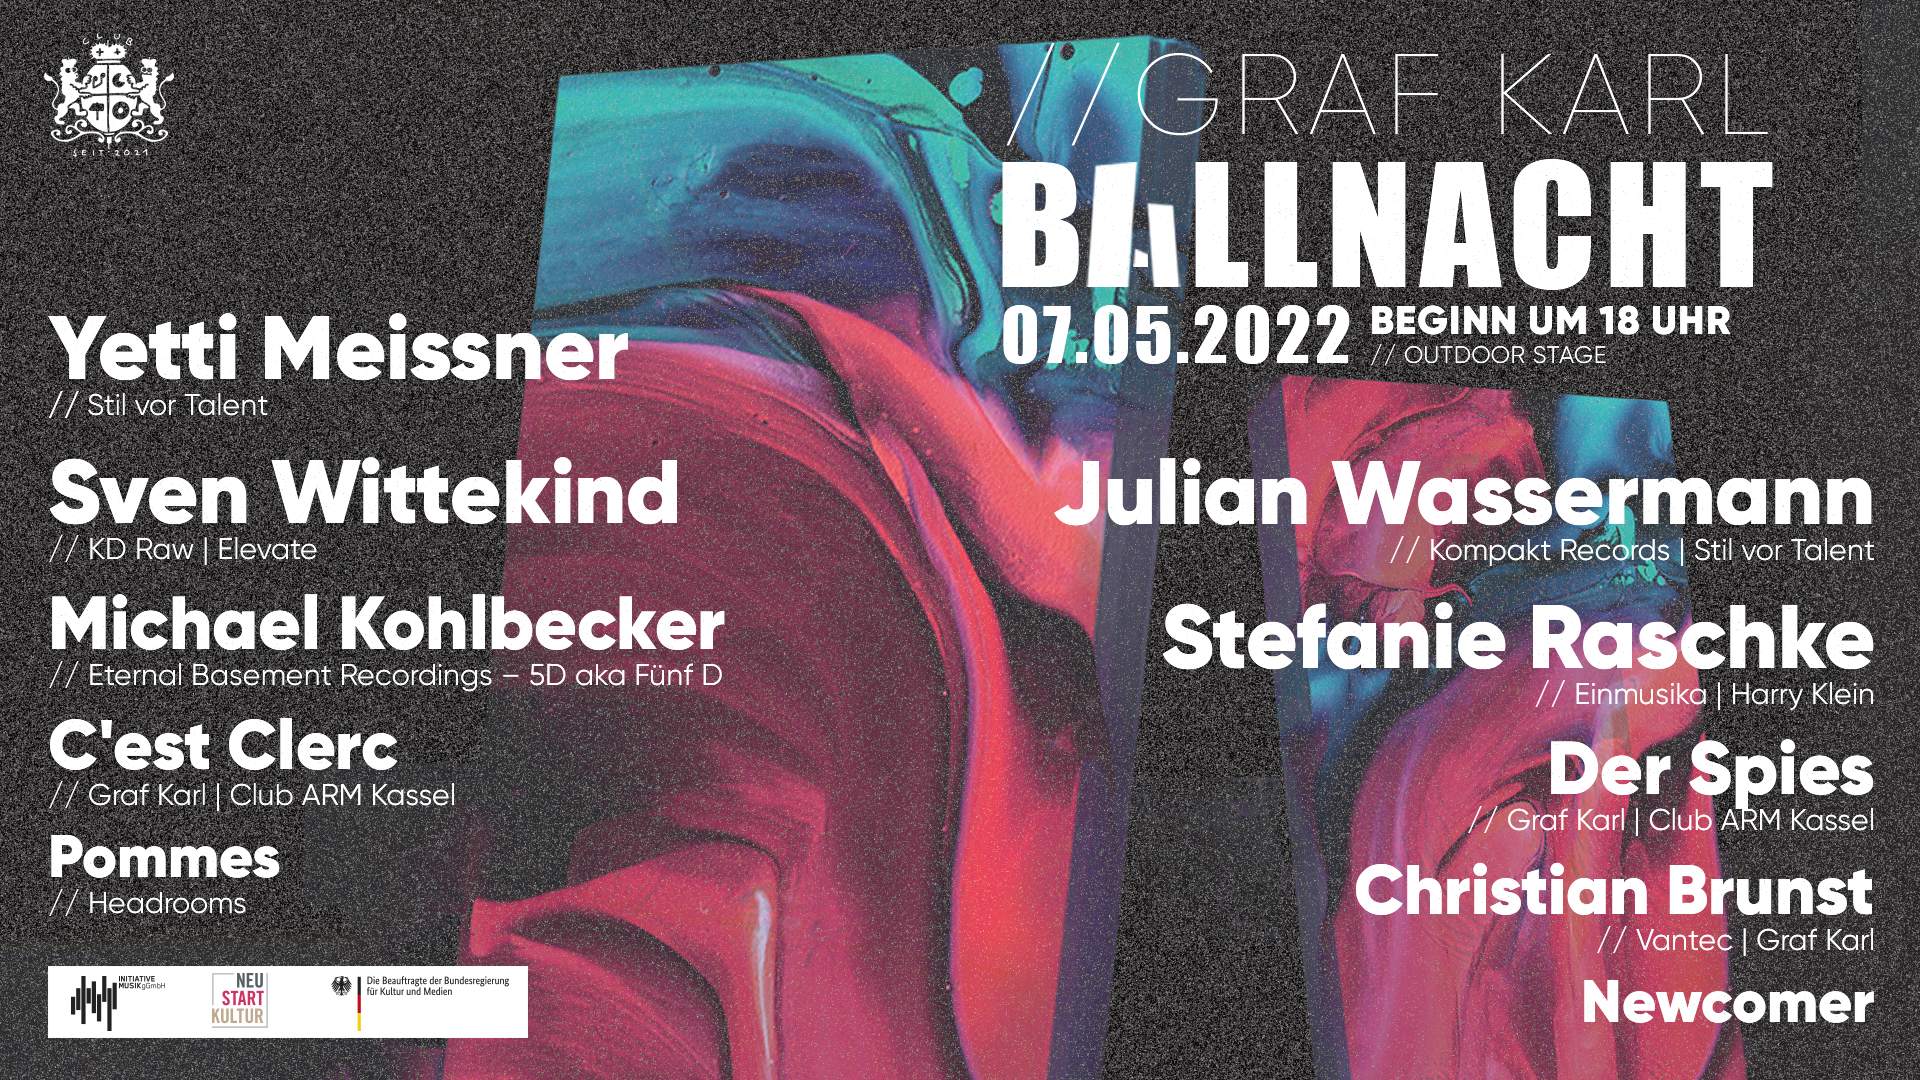 Karl's Ballnacht die Erste with Yetti Meissner, Sven Wittekind, uvm - フライヤー表